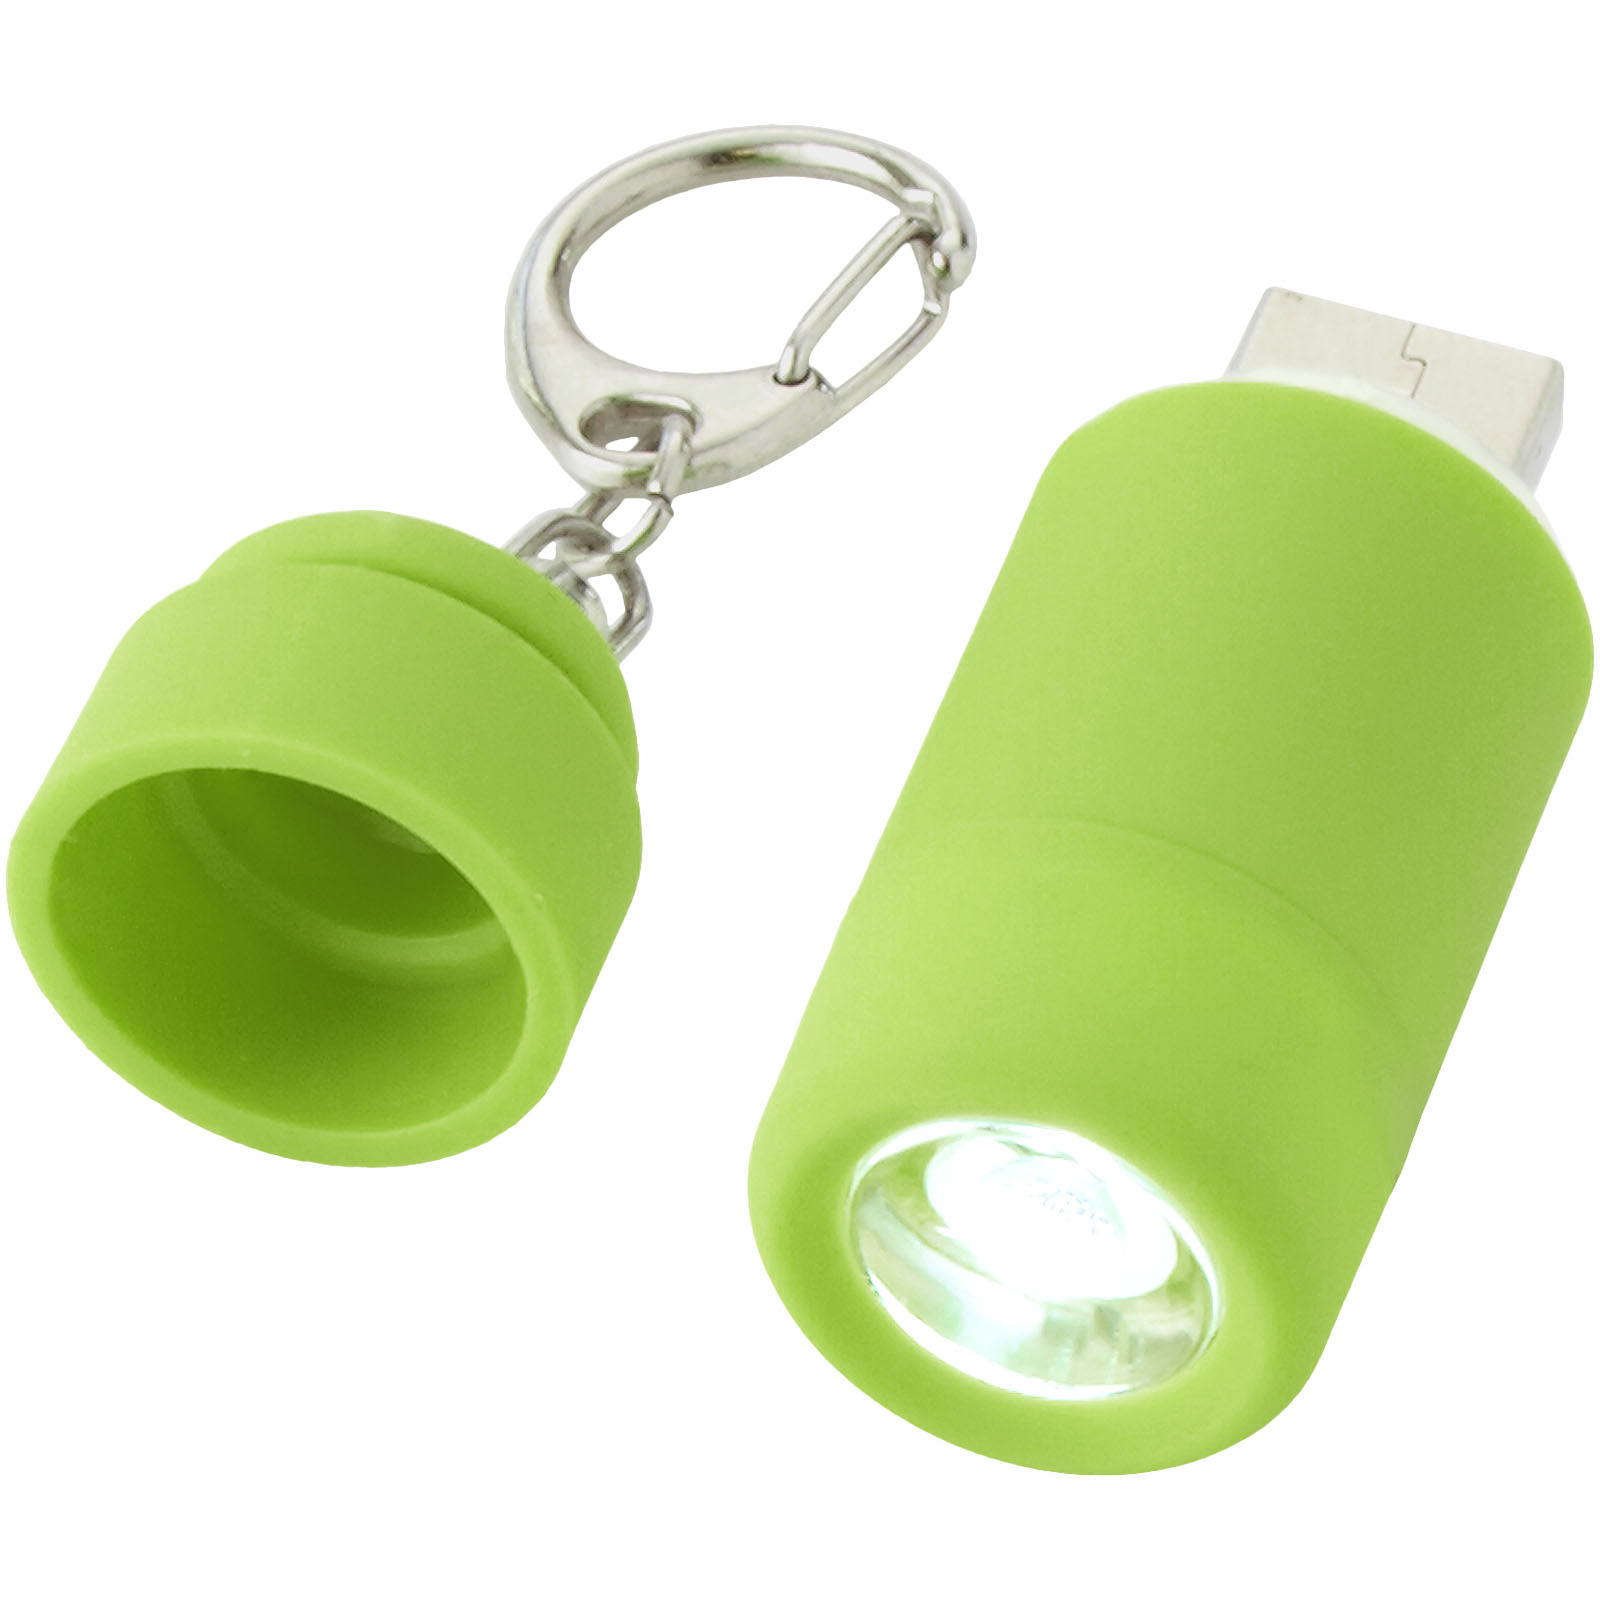 Torche porte-clés LED rechargeable par USB - Chantilly